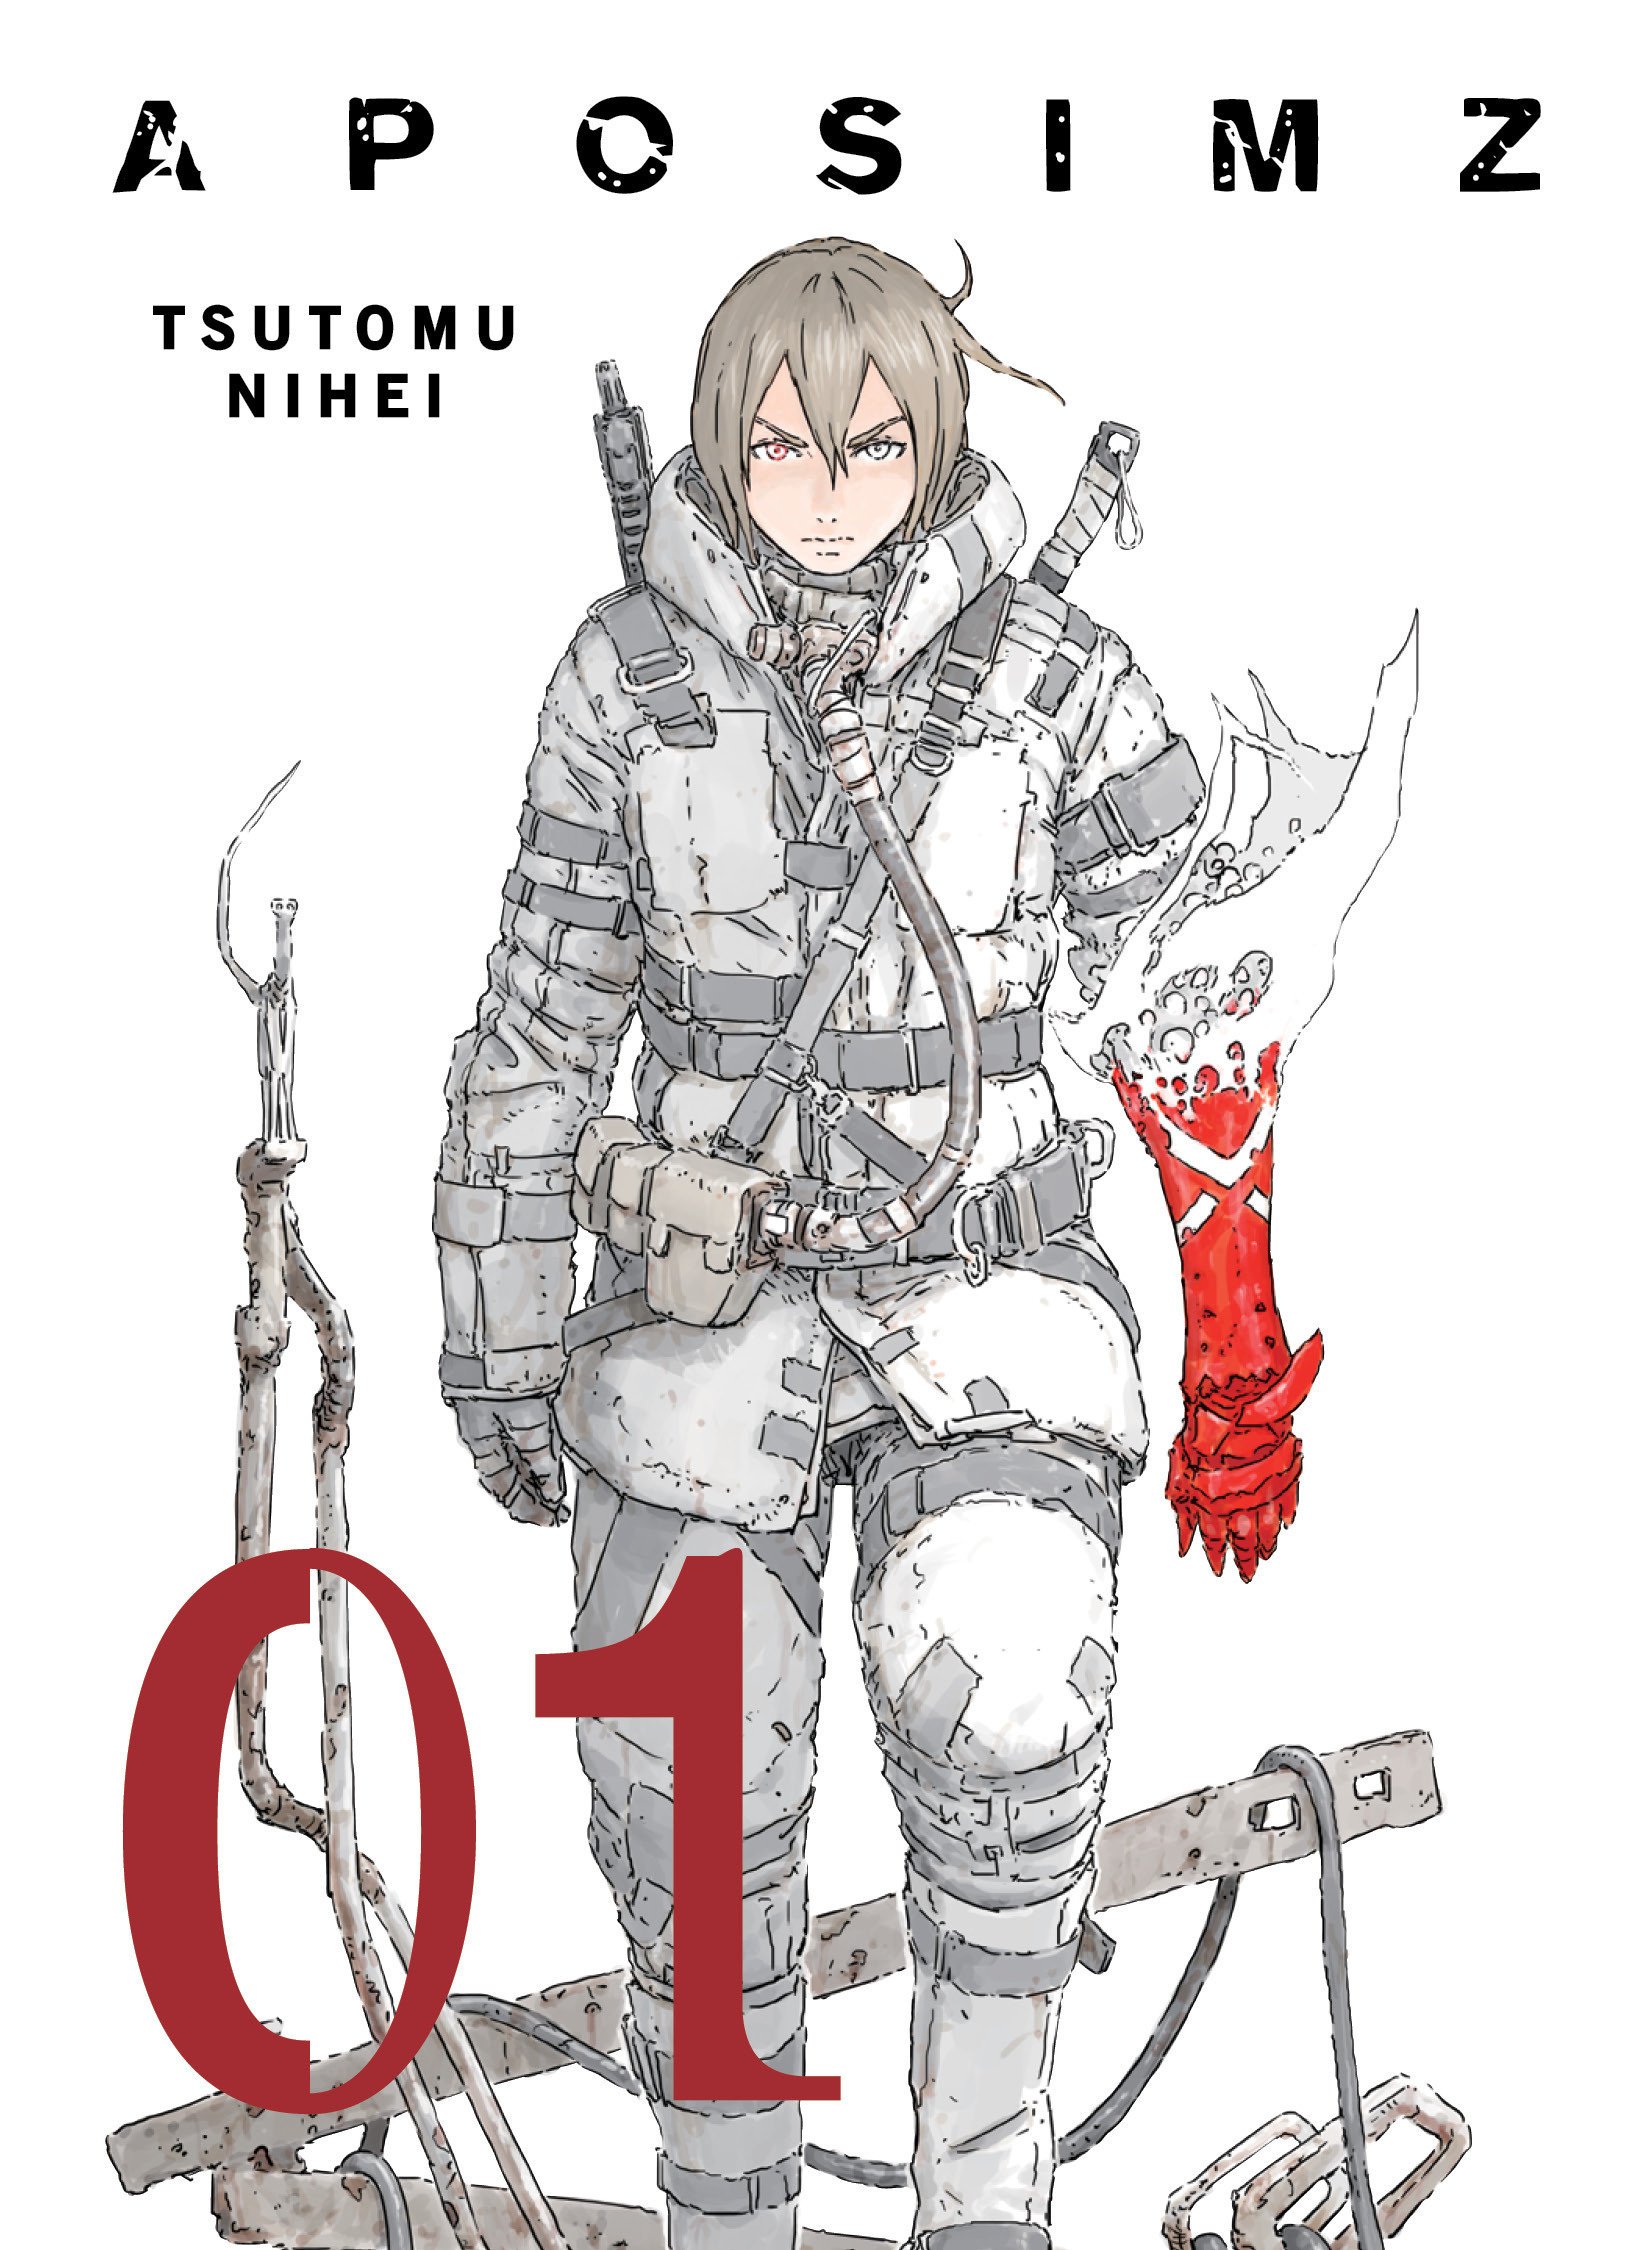 Das Cover von Verticals englischsprachiger Version von APOSIMZ, einem Science-Fiction-Manga von Tsutomu Nihei.  Das Cover zeigt das Artwork des Hauptcharakters Etherow, der mit entschlossenem Gesichtsausdruck vorwärts schreitet, während er in taktischer Umweltausrüstung gekleidet ist und Waffen und Werkzeuge an seinem Rücken und Gürtel trägt.